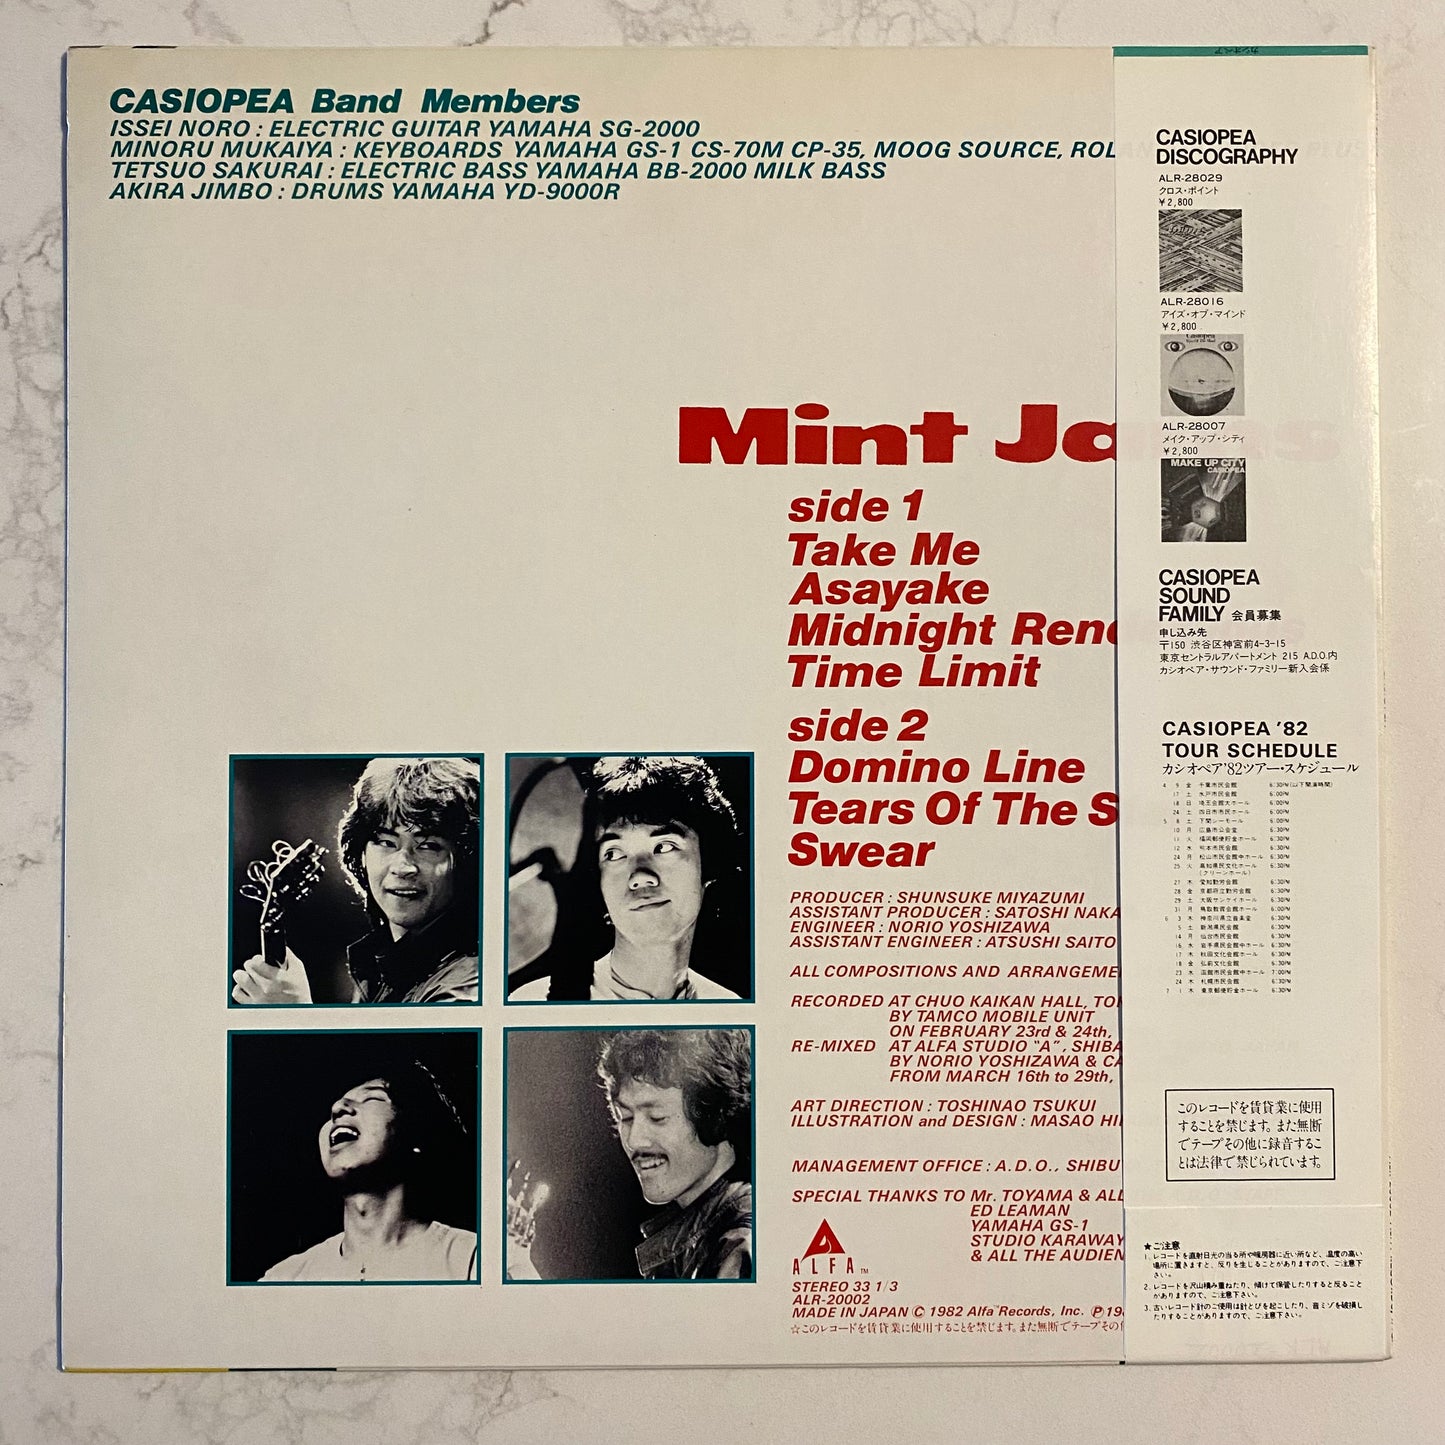 Casiopea - Mint Jams (LP, Album)